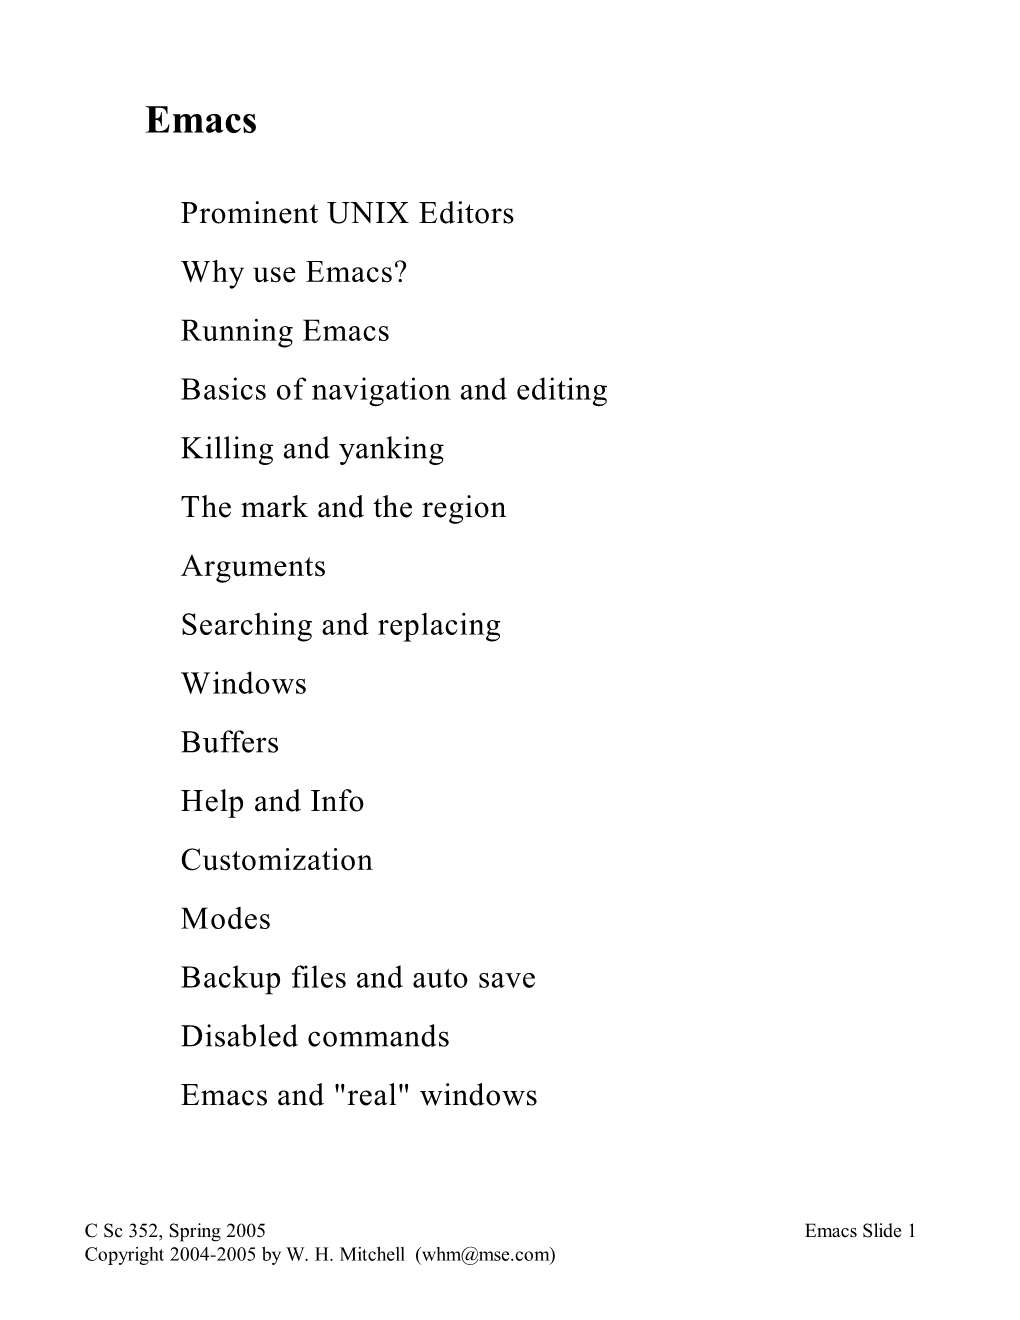 Prominent UNIX Editors Why Use Emacs? Running Emacs Basics Of